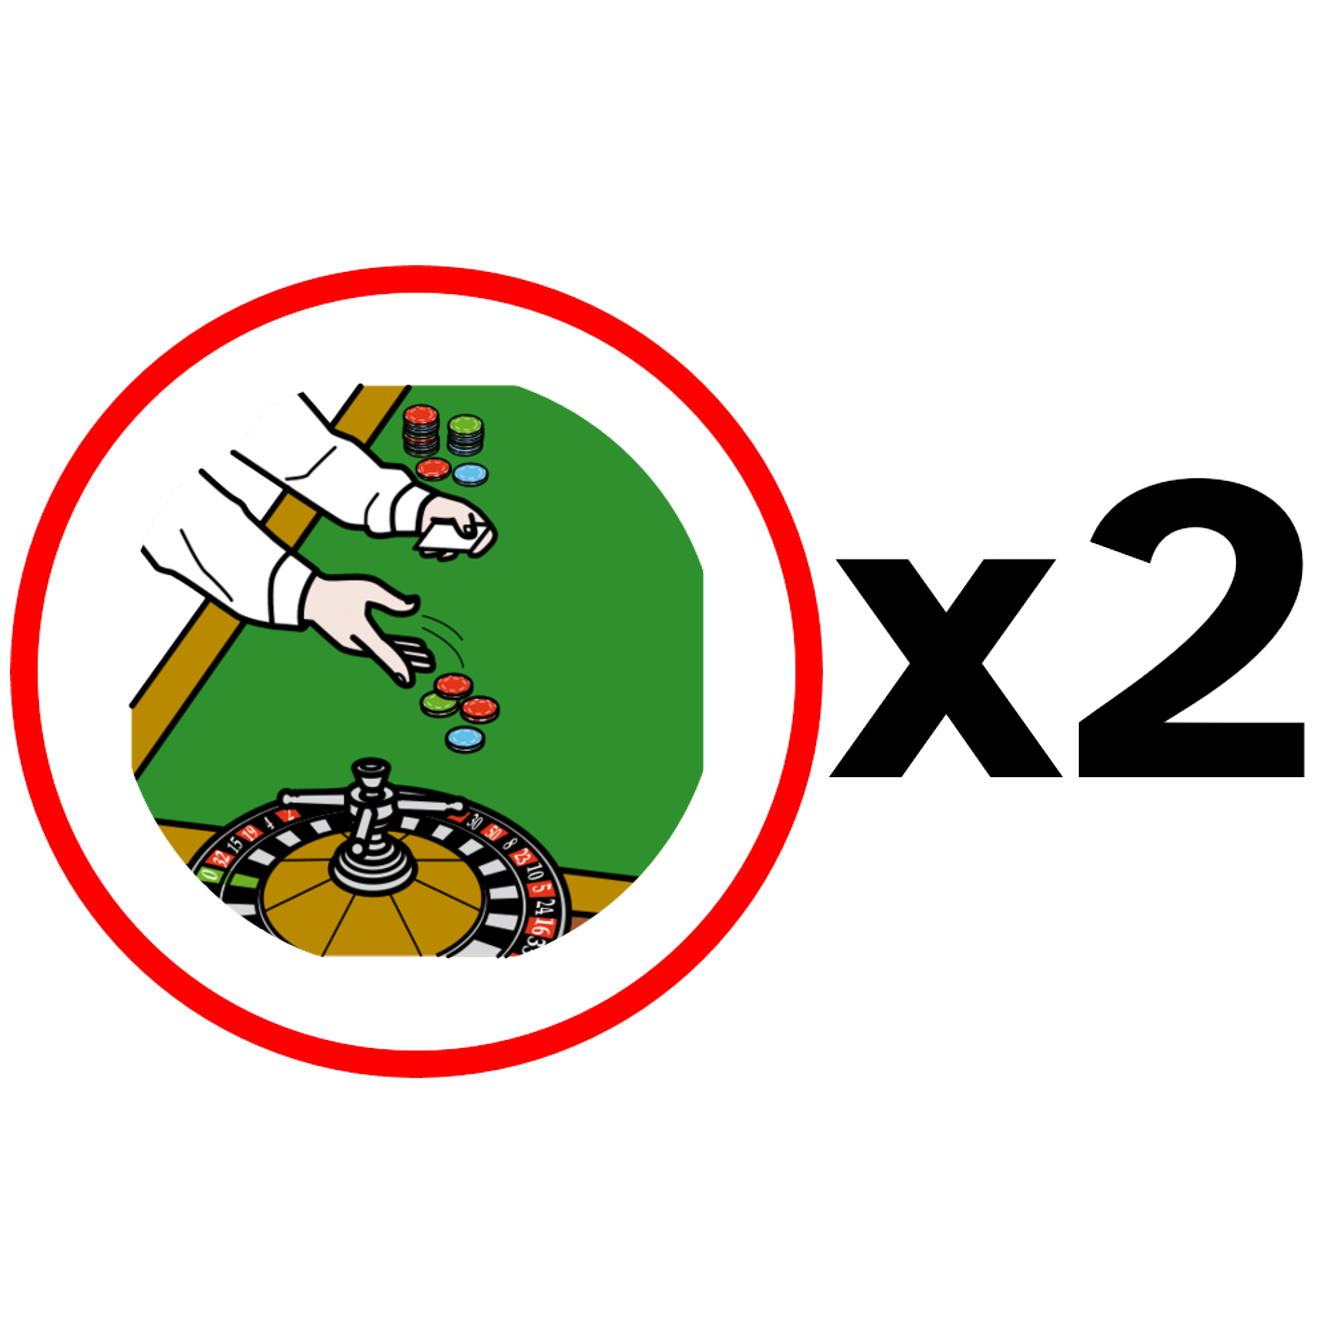 La imagen muestra un círculo rojo a la izquierda con dos manos apostando sobre el tapete de una ruleta y, a la derecha, el signo de multiplicar junto al número dos.